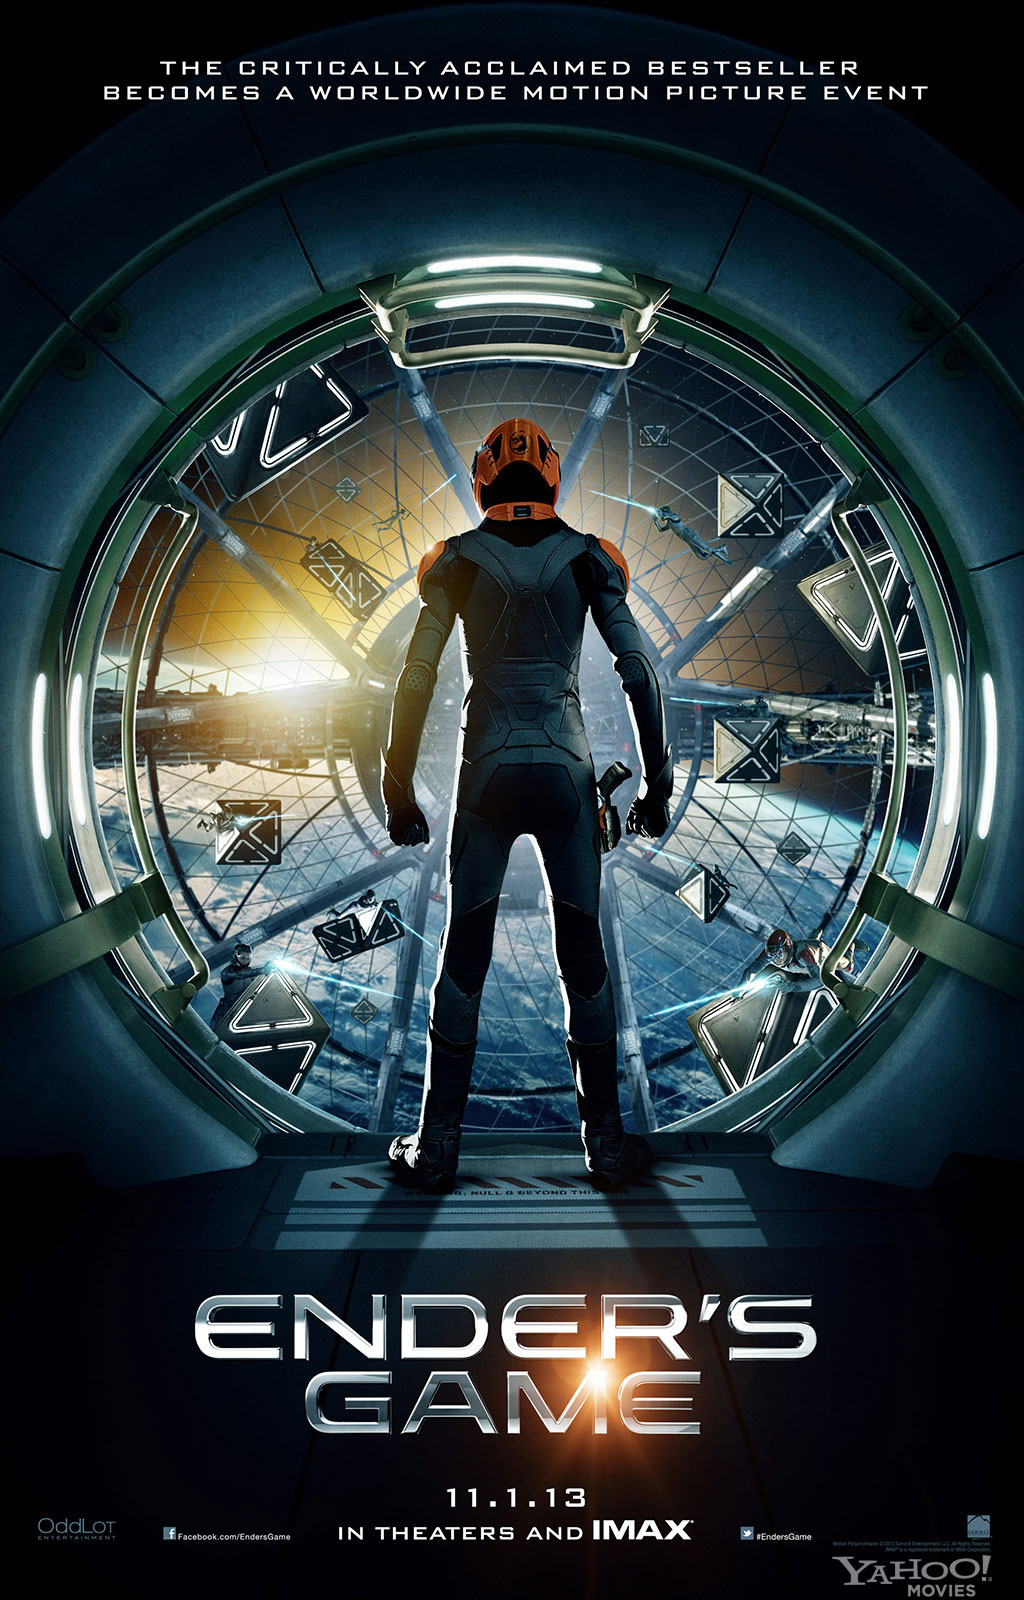 ENDER’S GAME (2013): First Teaser Poster Reveals Ender & Battle Room